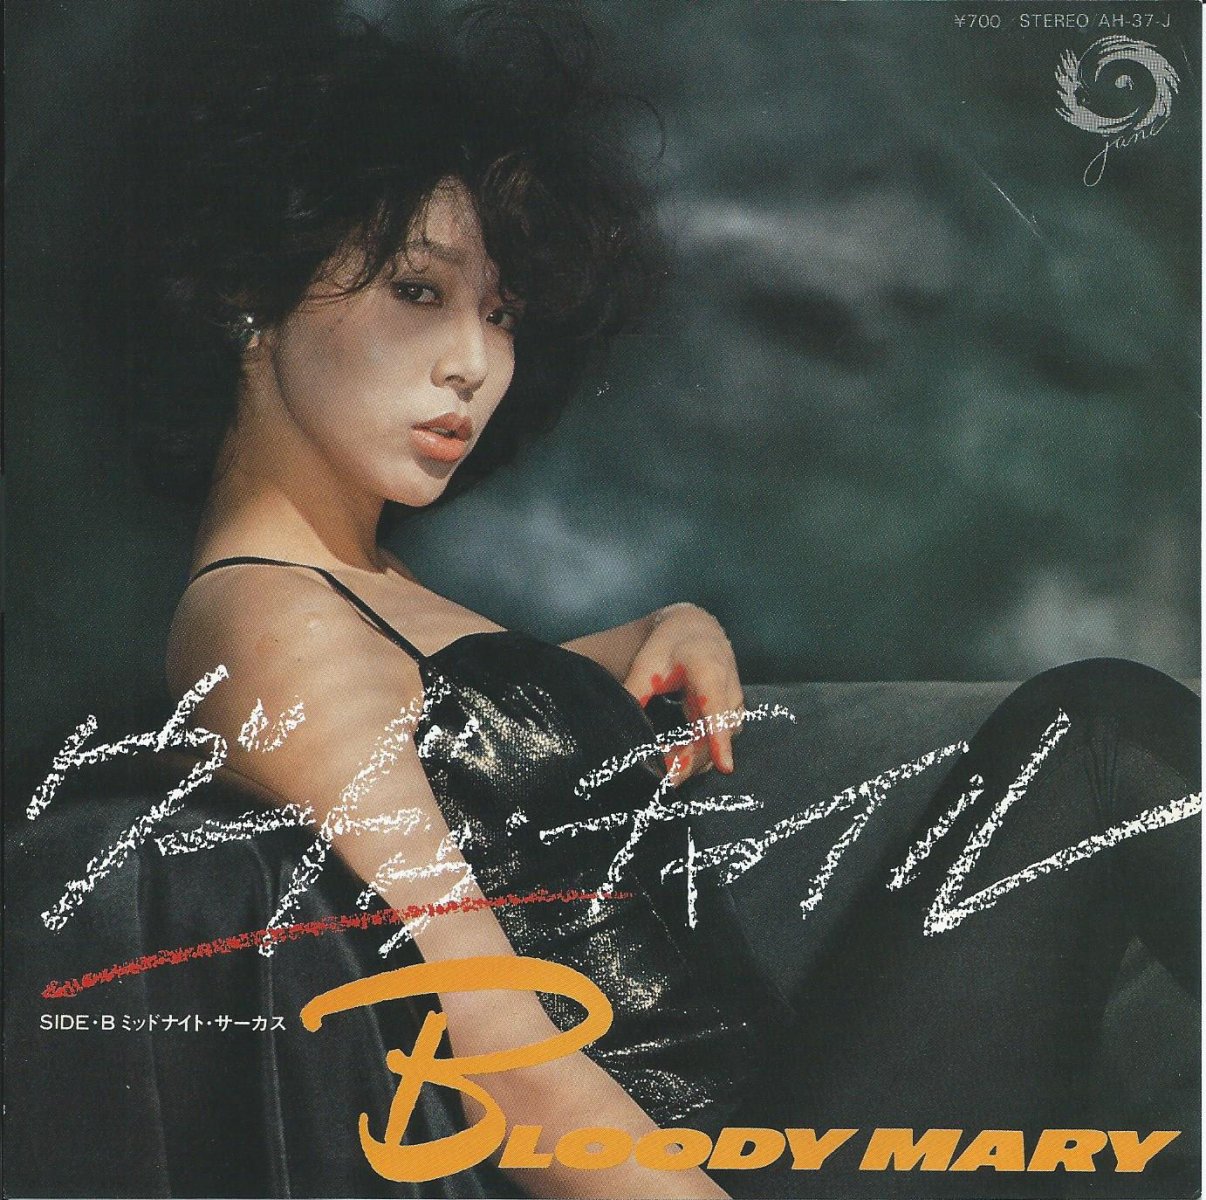 BLOODY MARY ブラディ・メリー (EMIE / 加藤エミ) / ヴードゥー・チャイル / ミッドナイト・サーカス (7) - HIP  TANK RECORDS